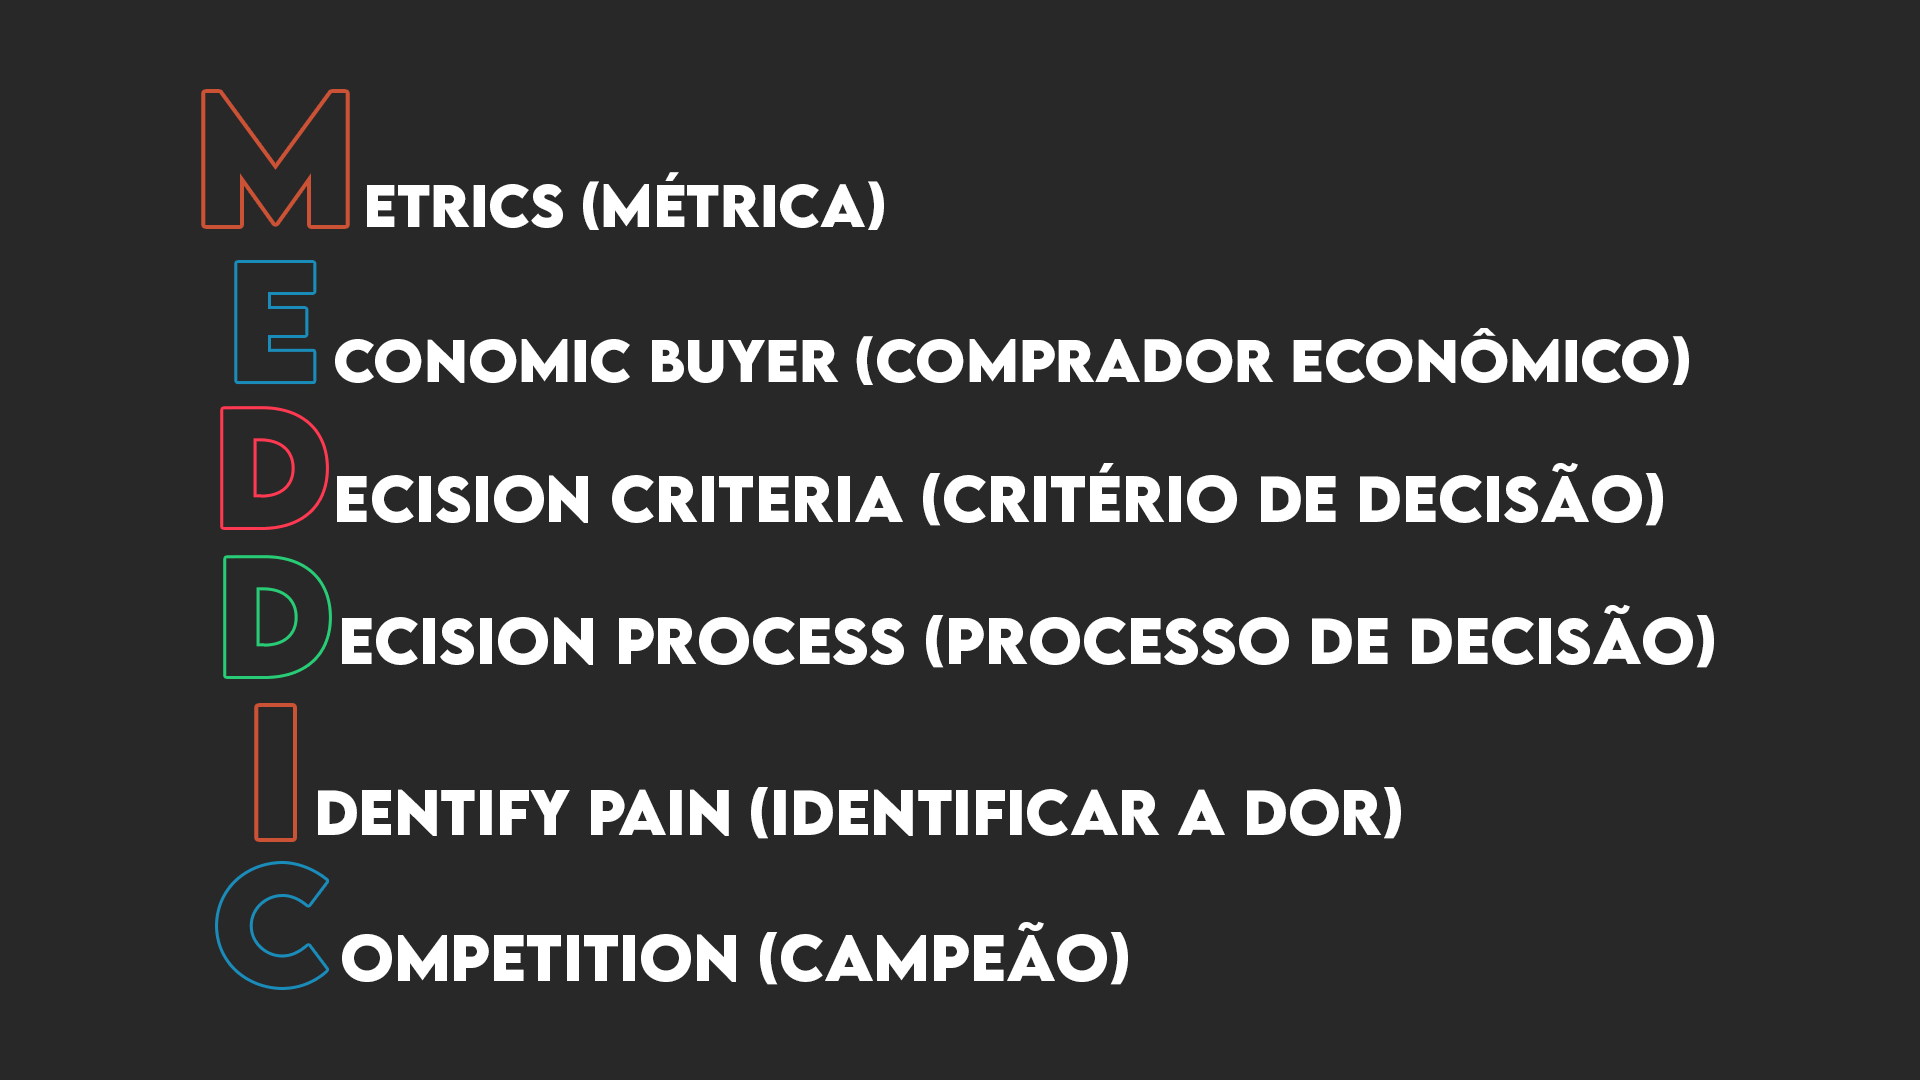 MEDDIC leads qualificados, metrics (métricas), economic buyer (comprador econômico), decision criteria (críterio de decisão), decision process (processo de decisão), identify pain (identificar a dor), competition (campeão).